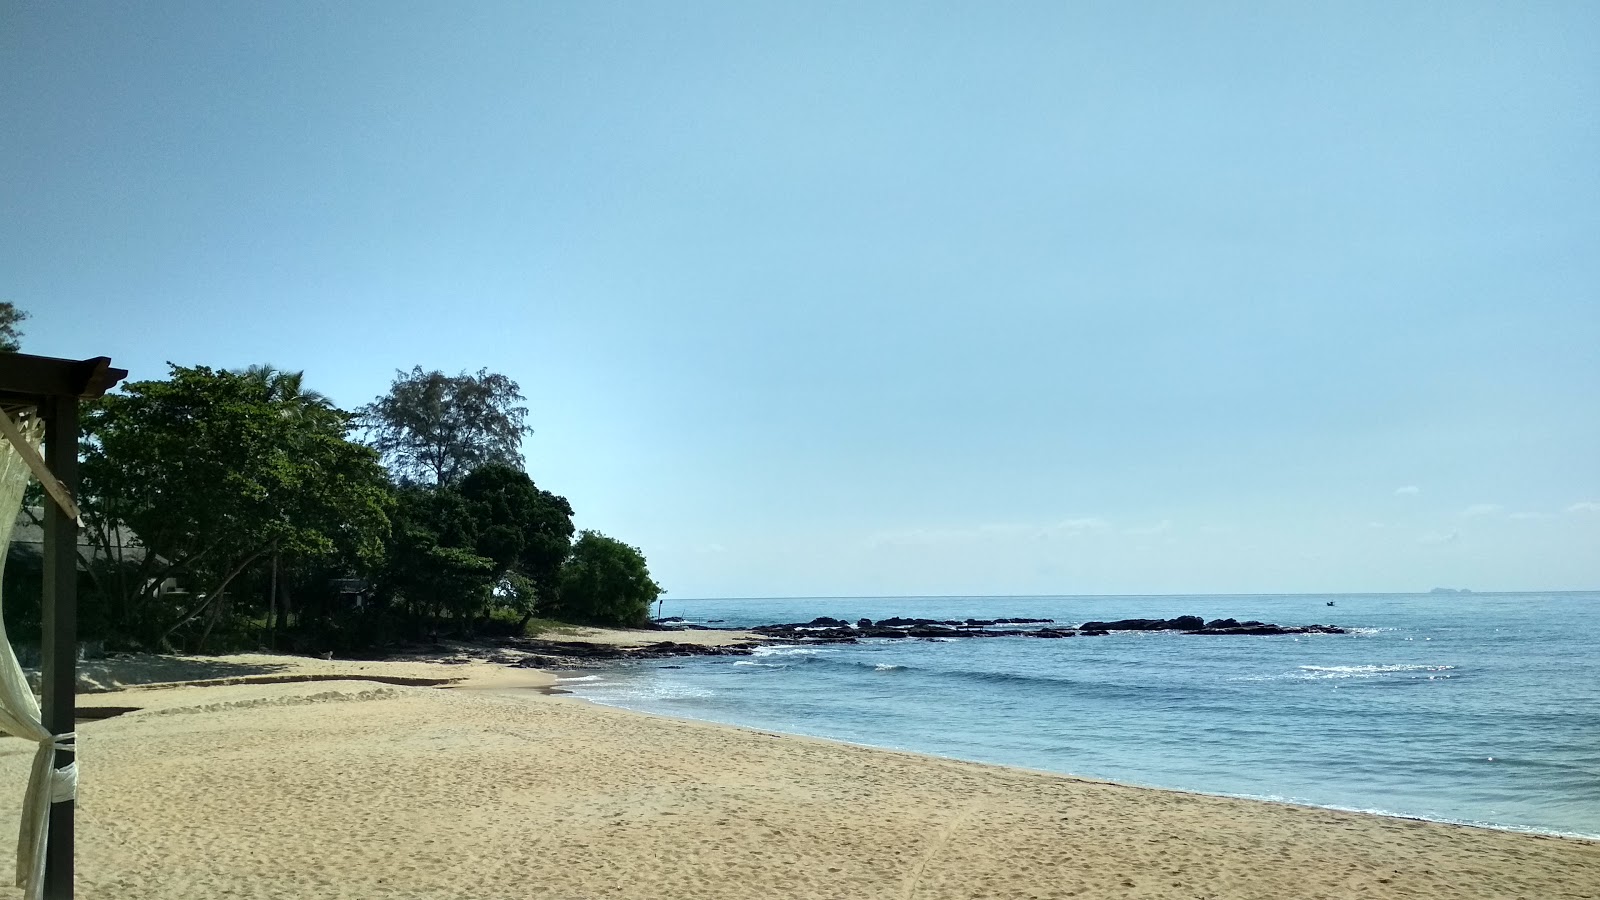 Photo de Tanjung Jara Beach - endroit populaire parmi les connaisseurs de la détente